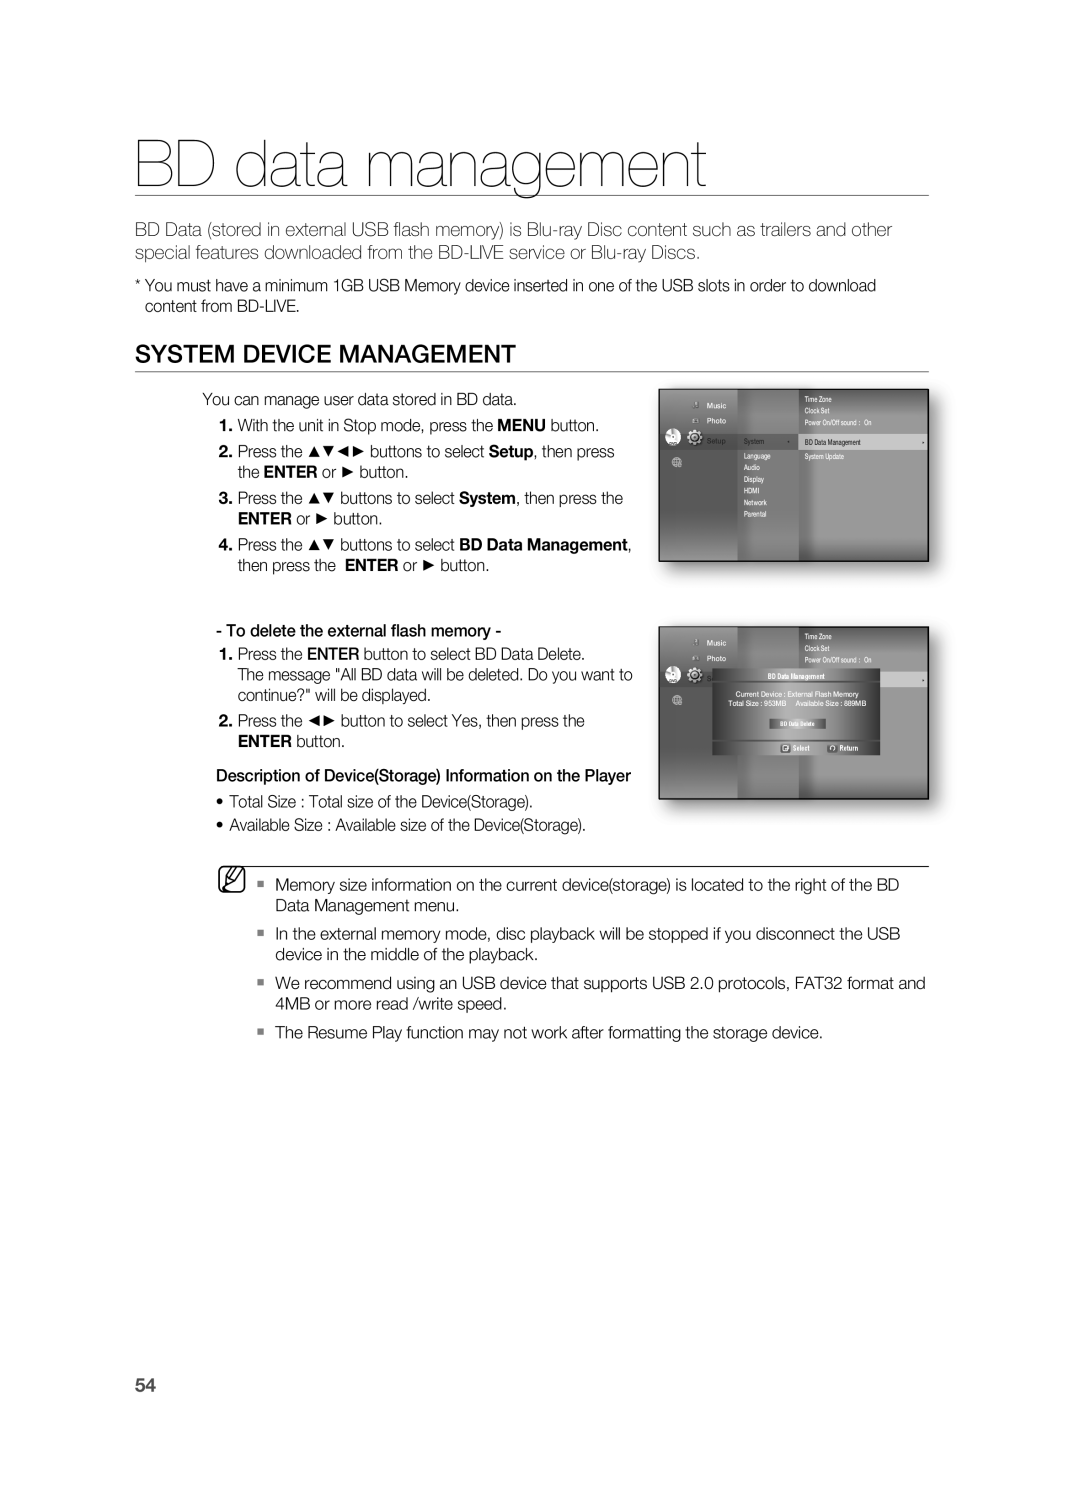 Samsung HT-BD8200 user manual BD data management, System Device Management 